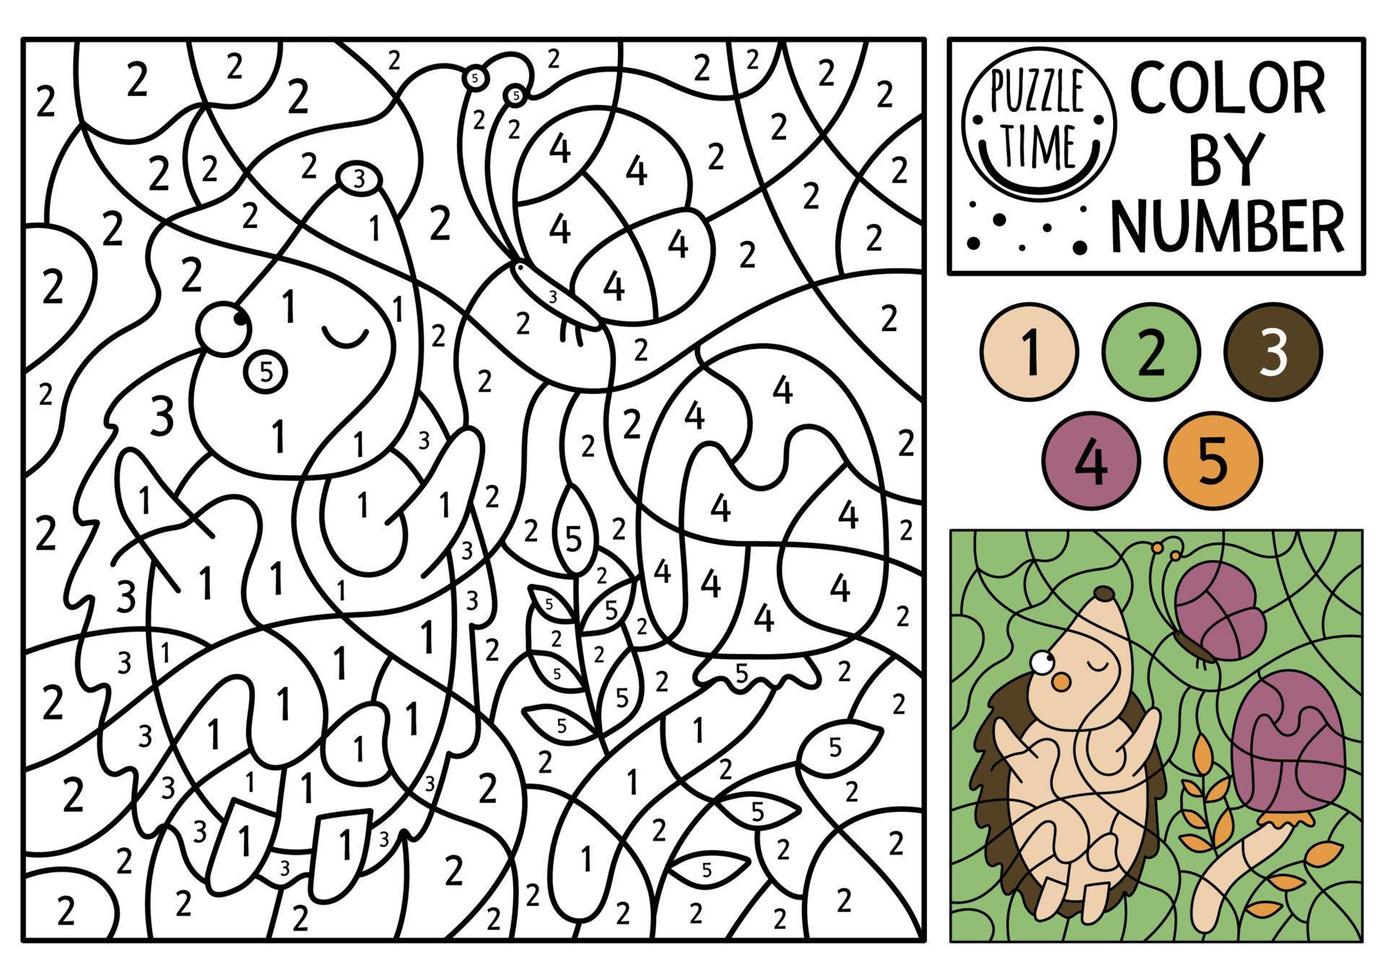 vector color del bosque por actividad numérica con erizo, mariposa y seta. juego de contar bosques otoñales con animal lindo. Divertida página para colorear de naturaleza otoñal para niños.